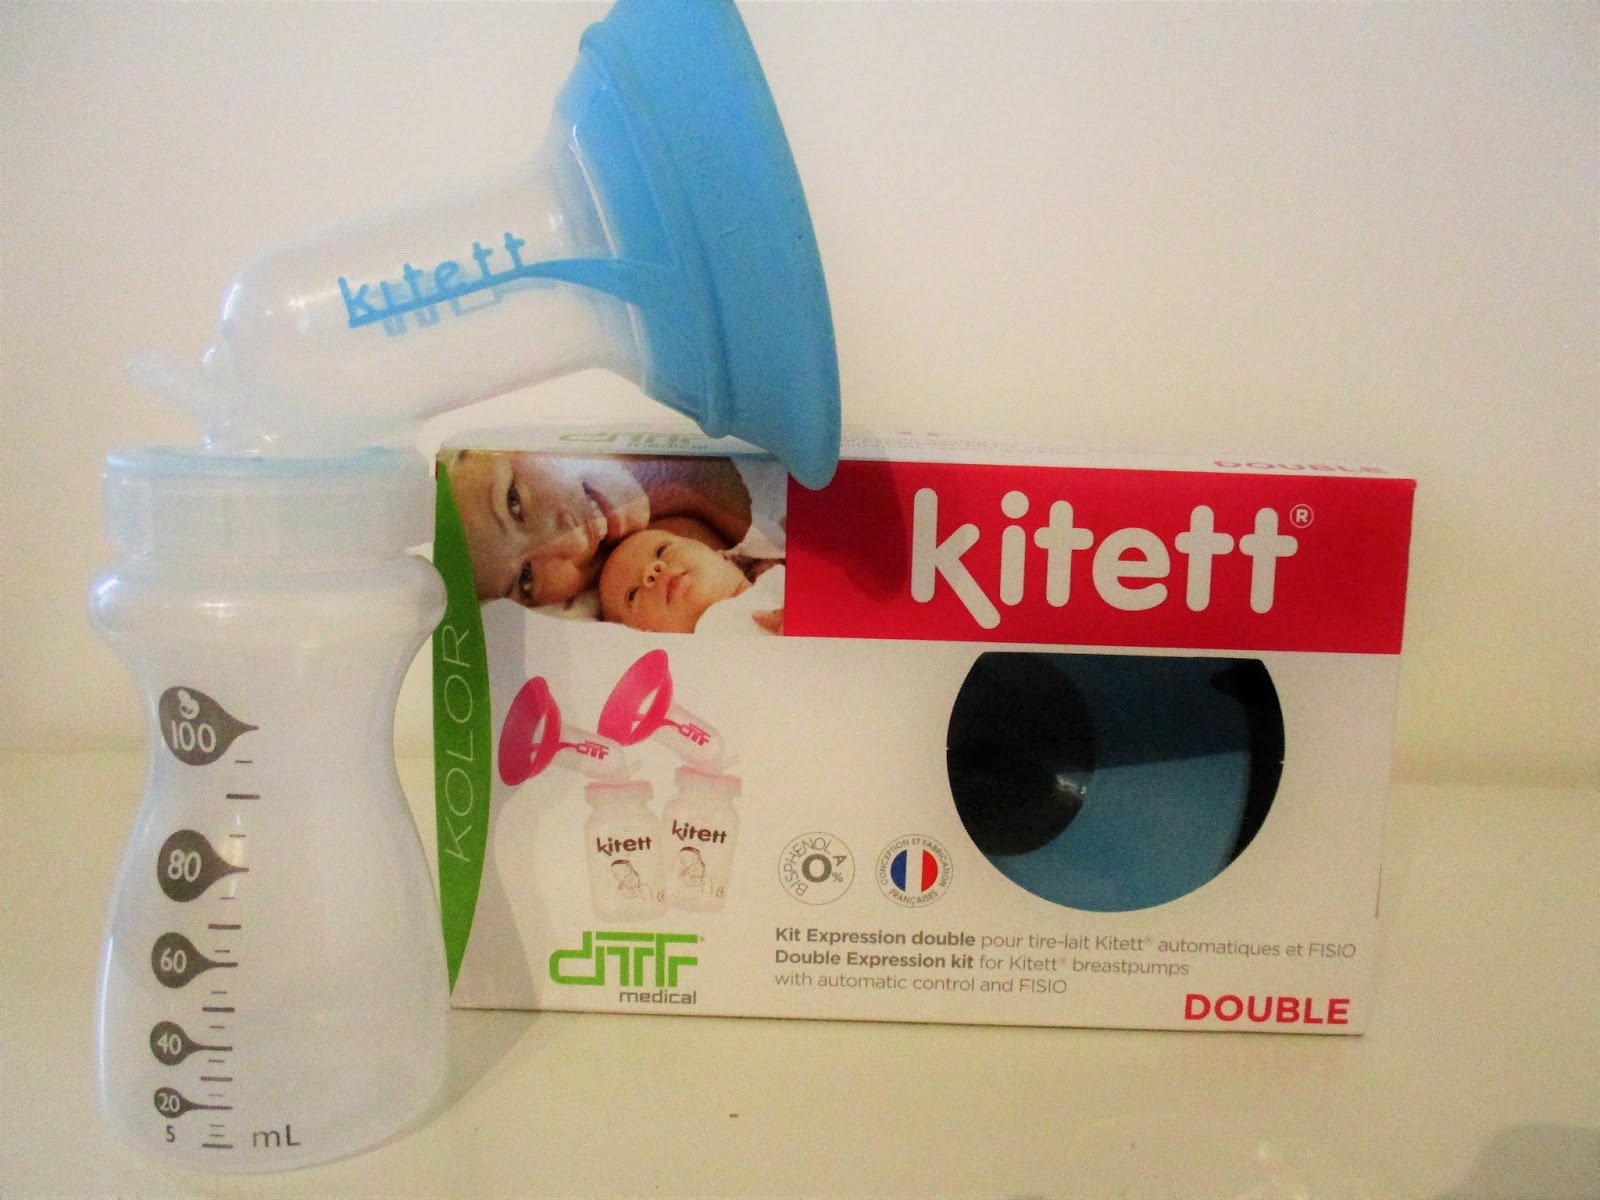 Lot de 2 récipients pour lait maternel (2x100ml) Fisio Bib - Kitett